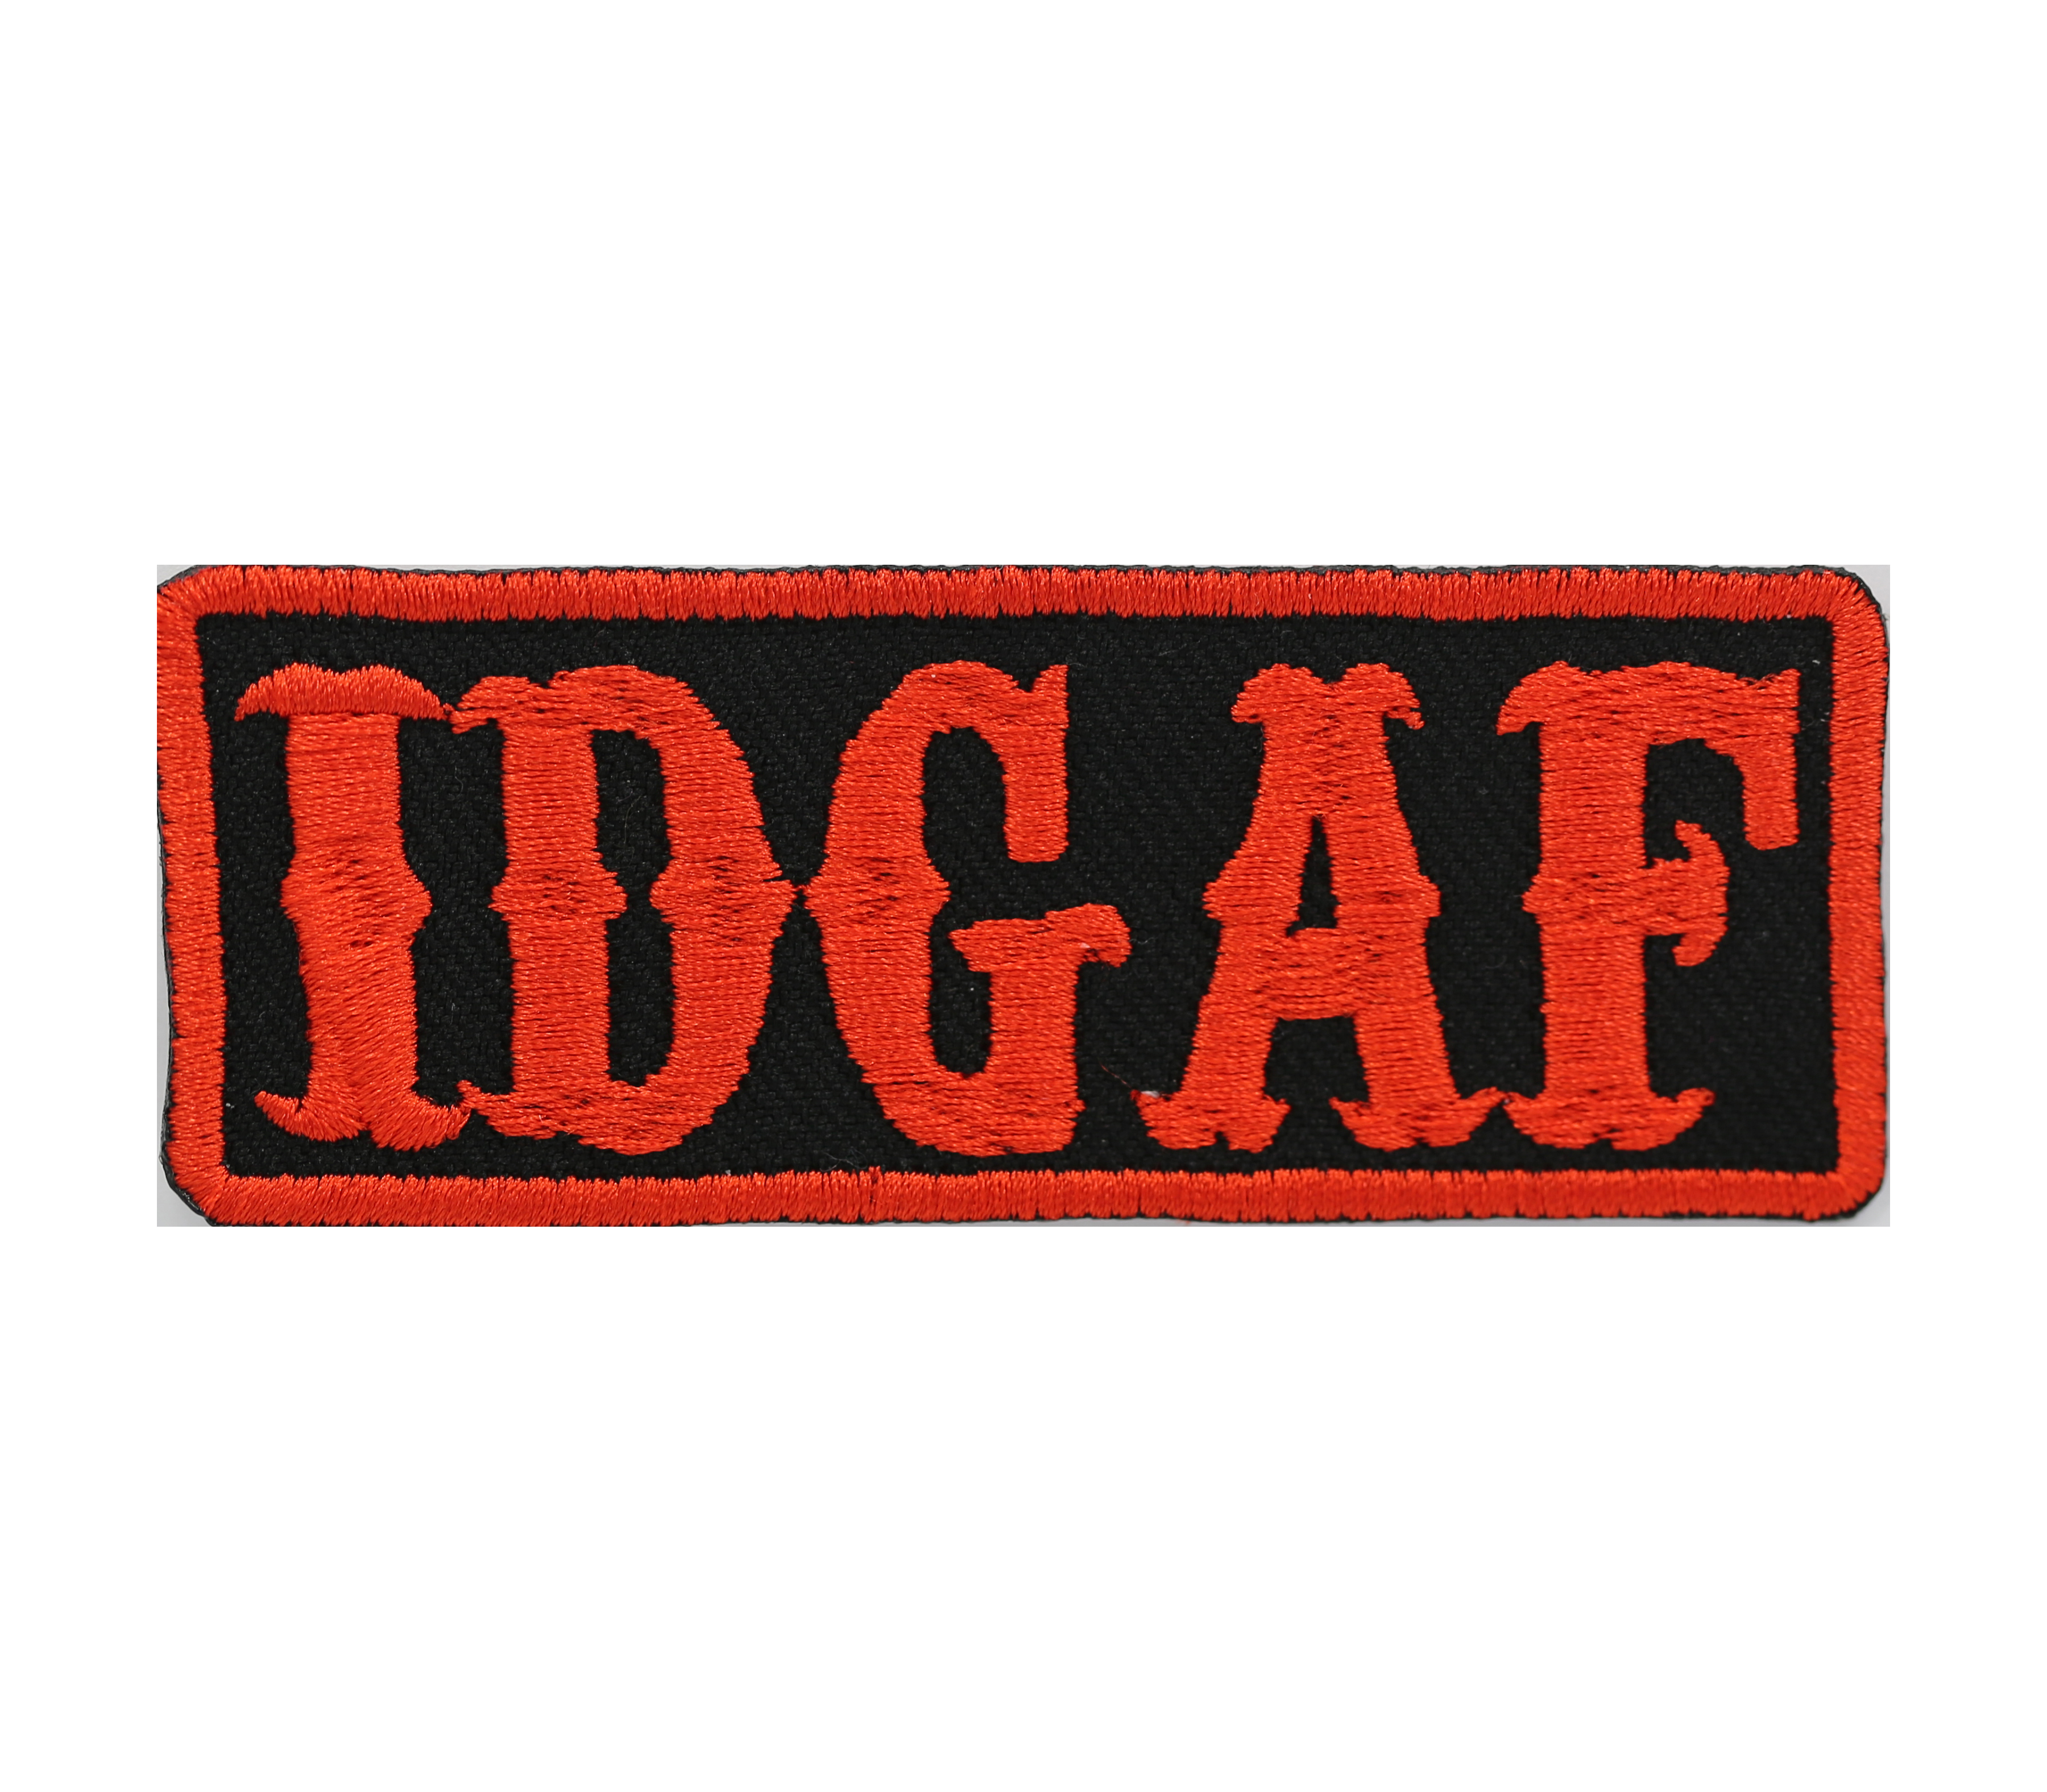 IDGAF Biker Embroider Patch